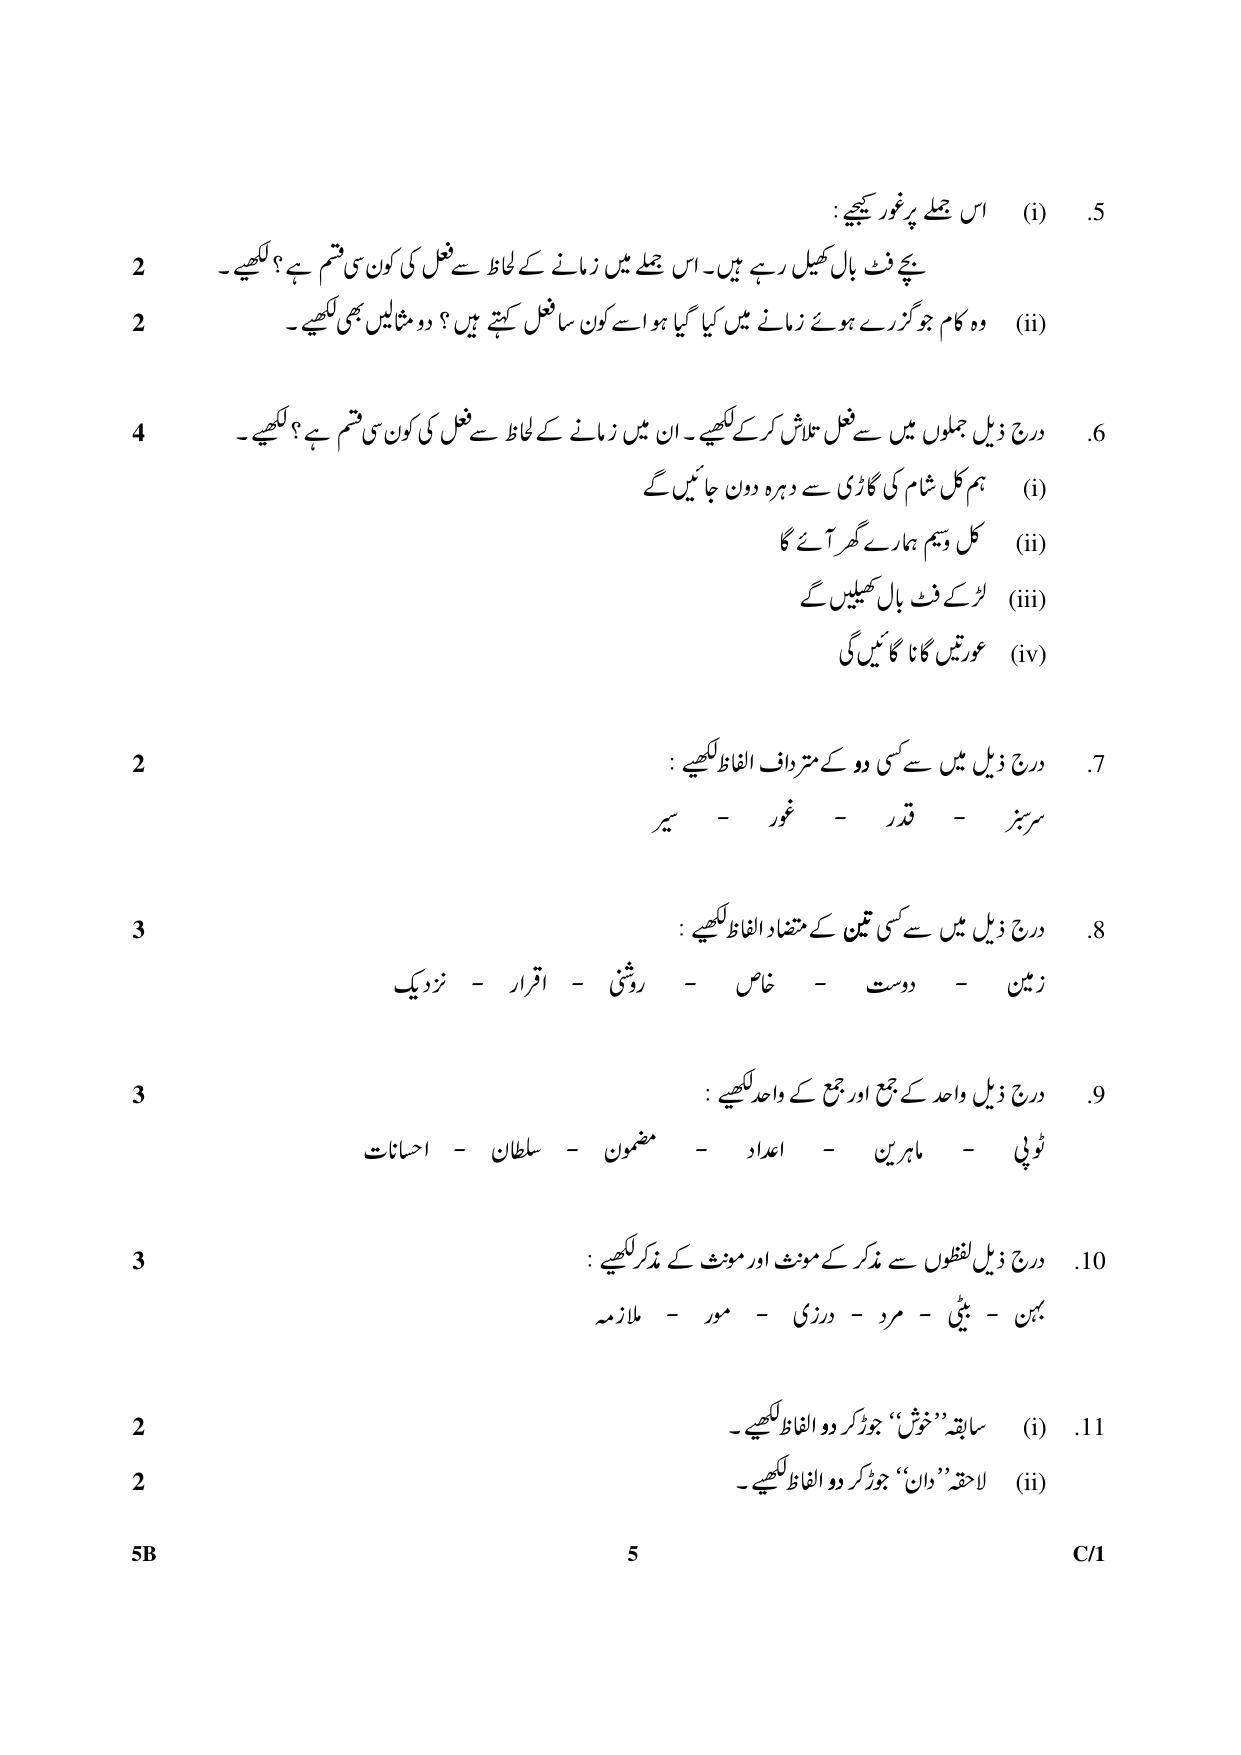 CBSE Class 10 5B Urdu (Course B) 2018 Compartment Question Paper - Page 5